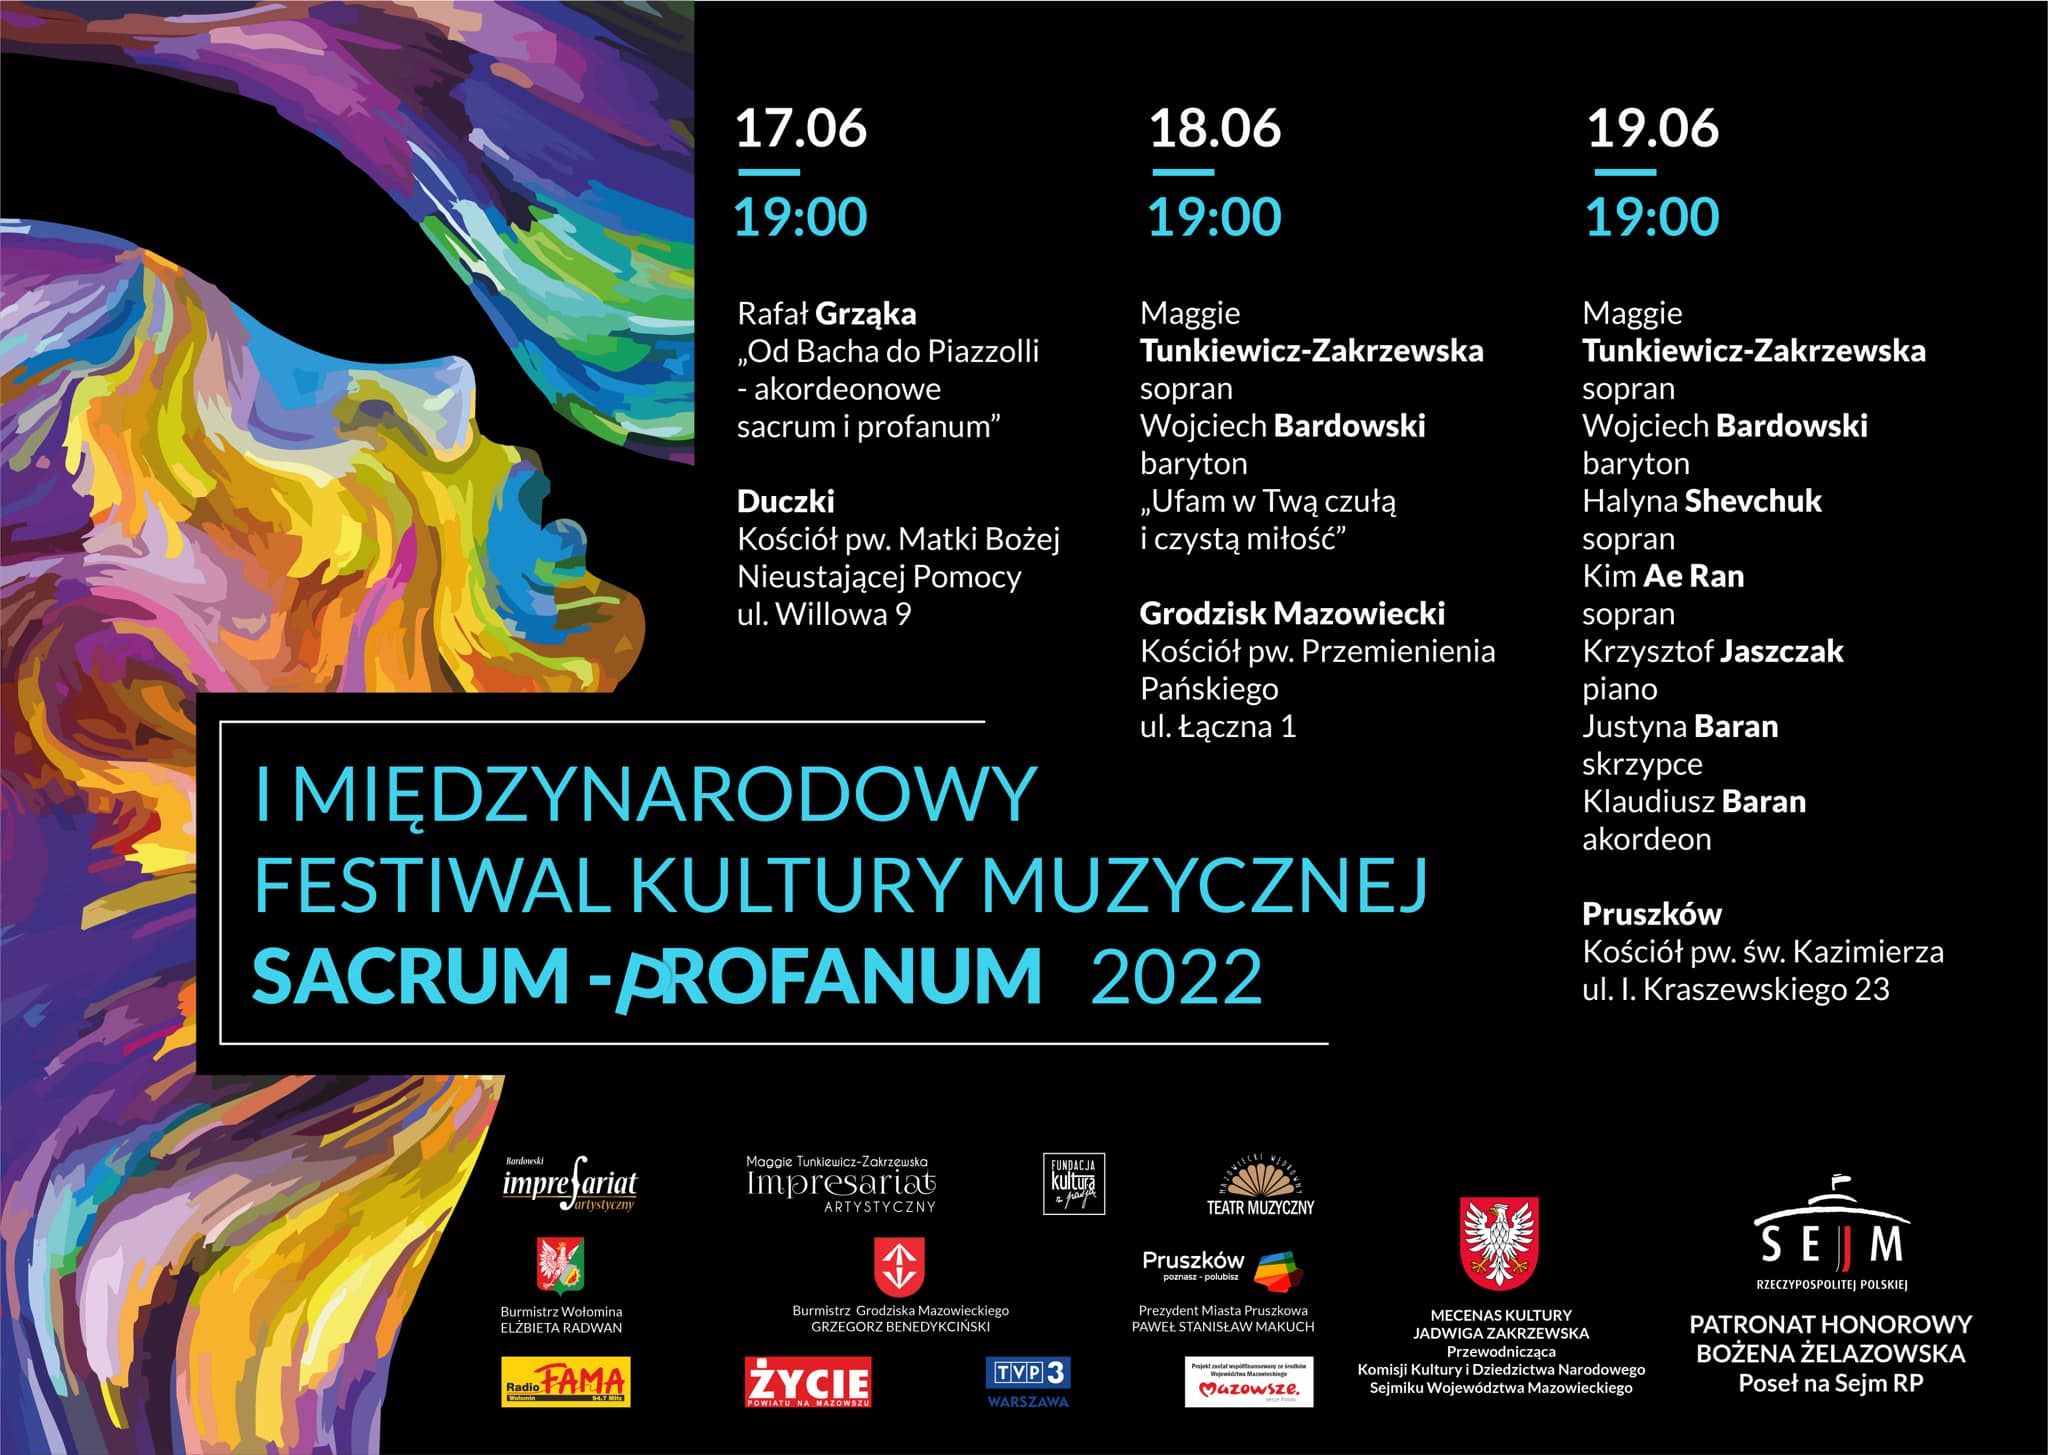 I International Festival of Music Culture Sacrum - Profanum 2022